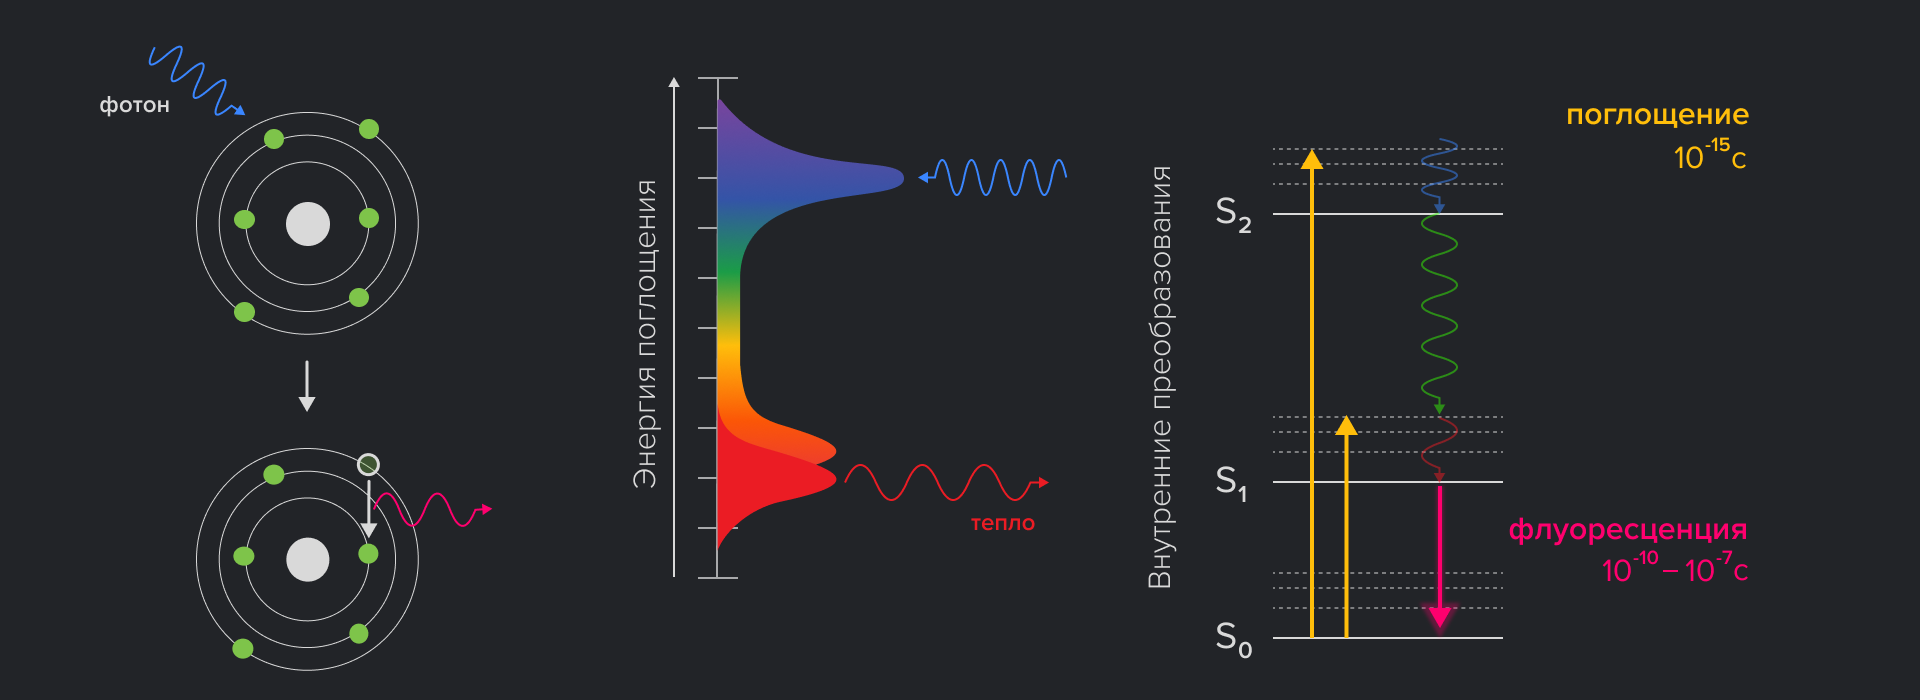 Физические основы флуоресценции и диаграмма Яблонского